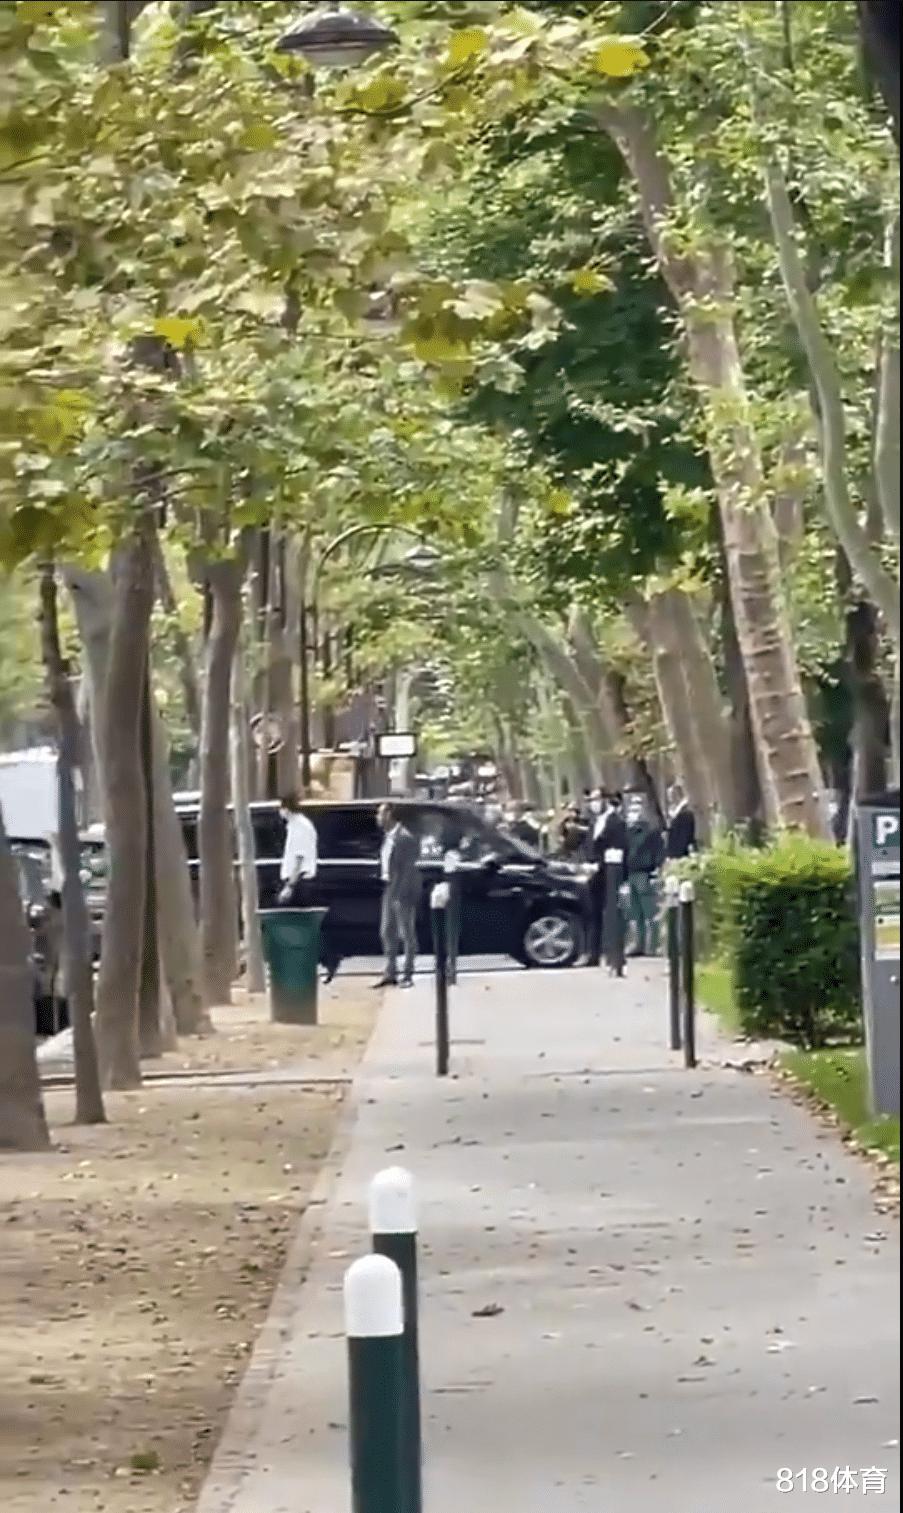 总统待遇! 梅西抵达巴黎体检, 3辆警车开道3辆殿后, 上百防暴警察封路(7)